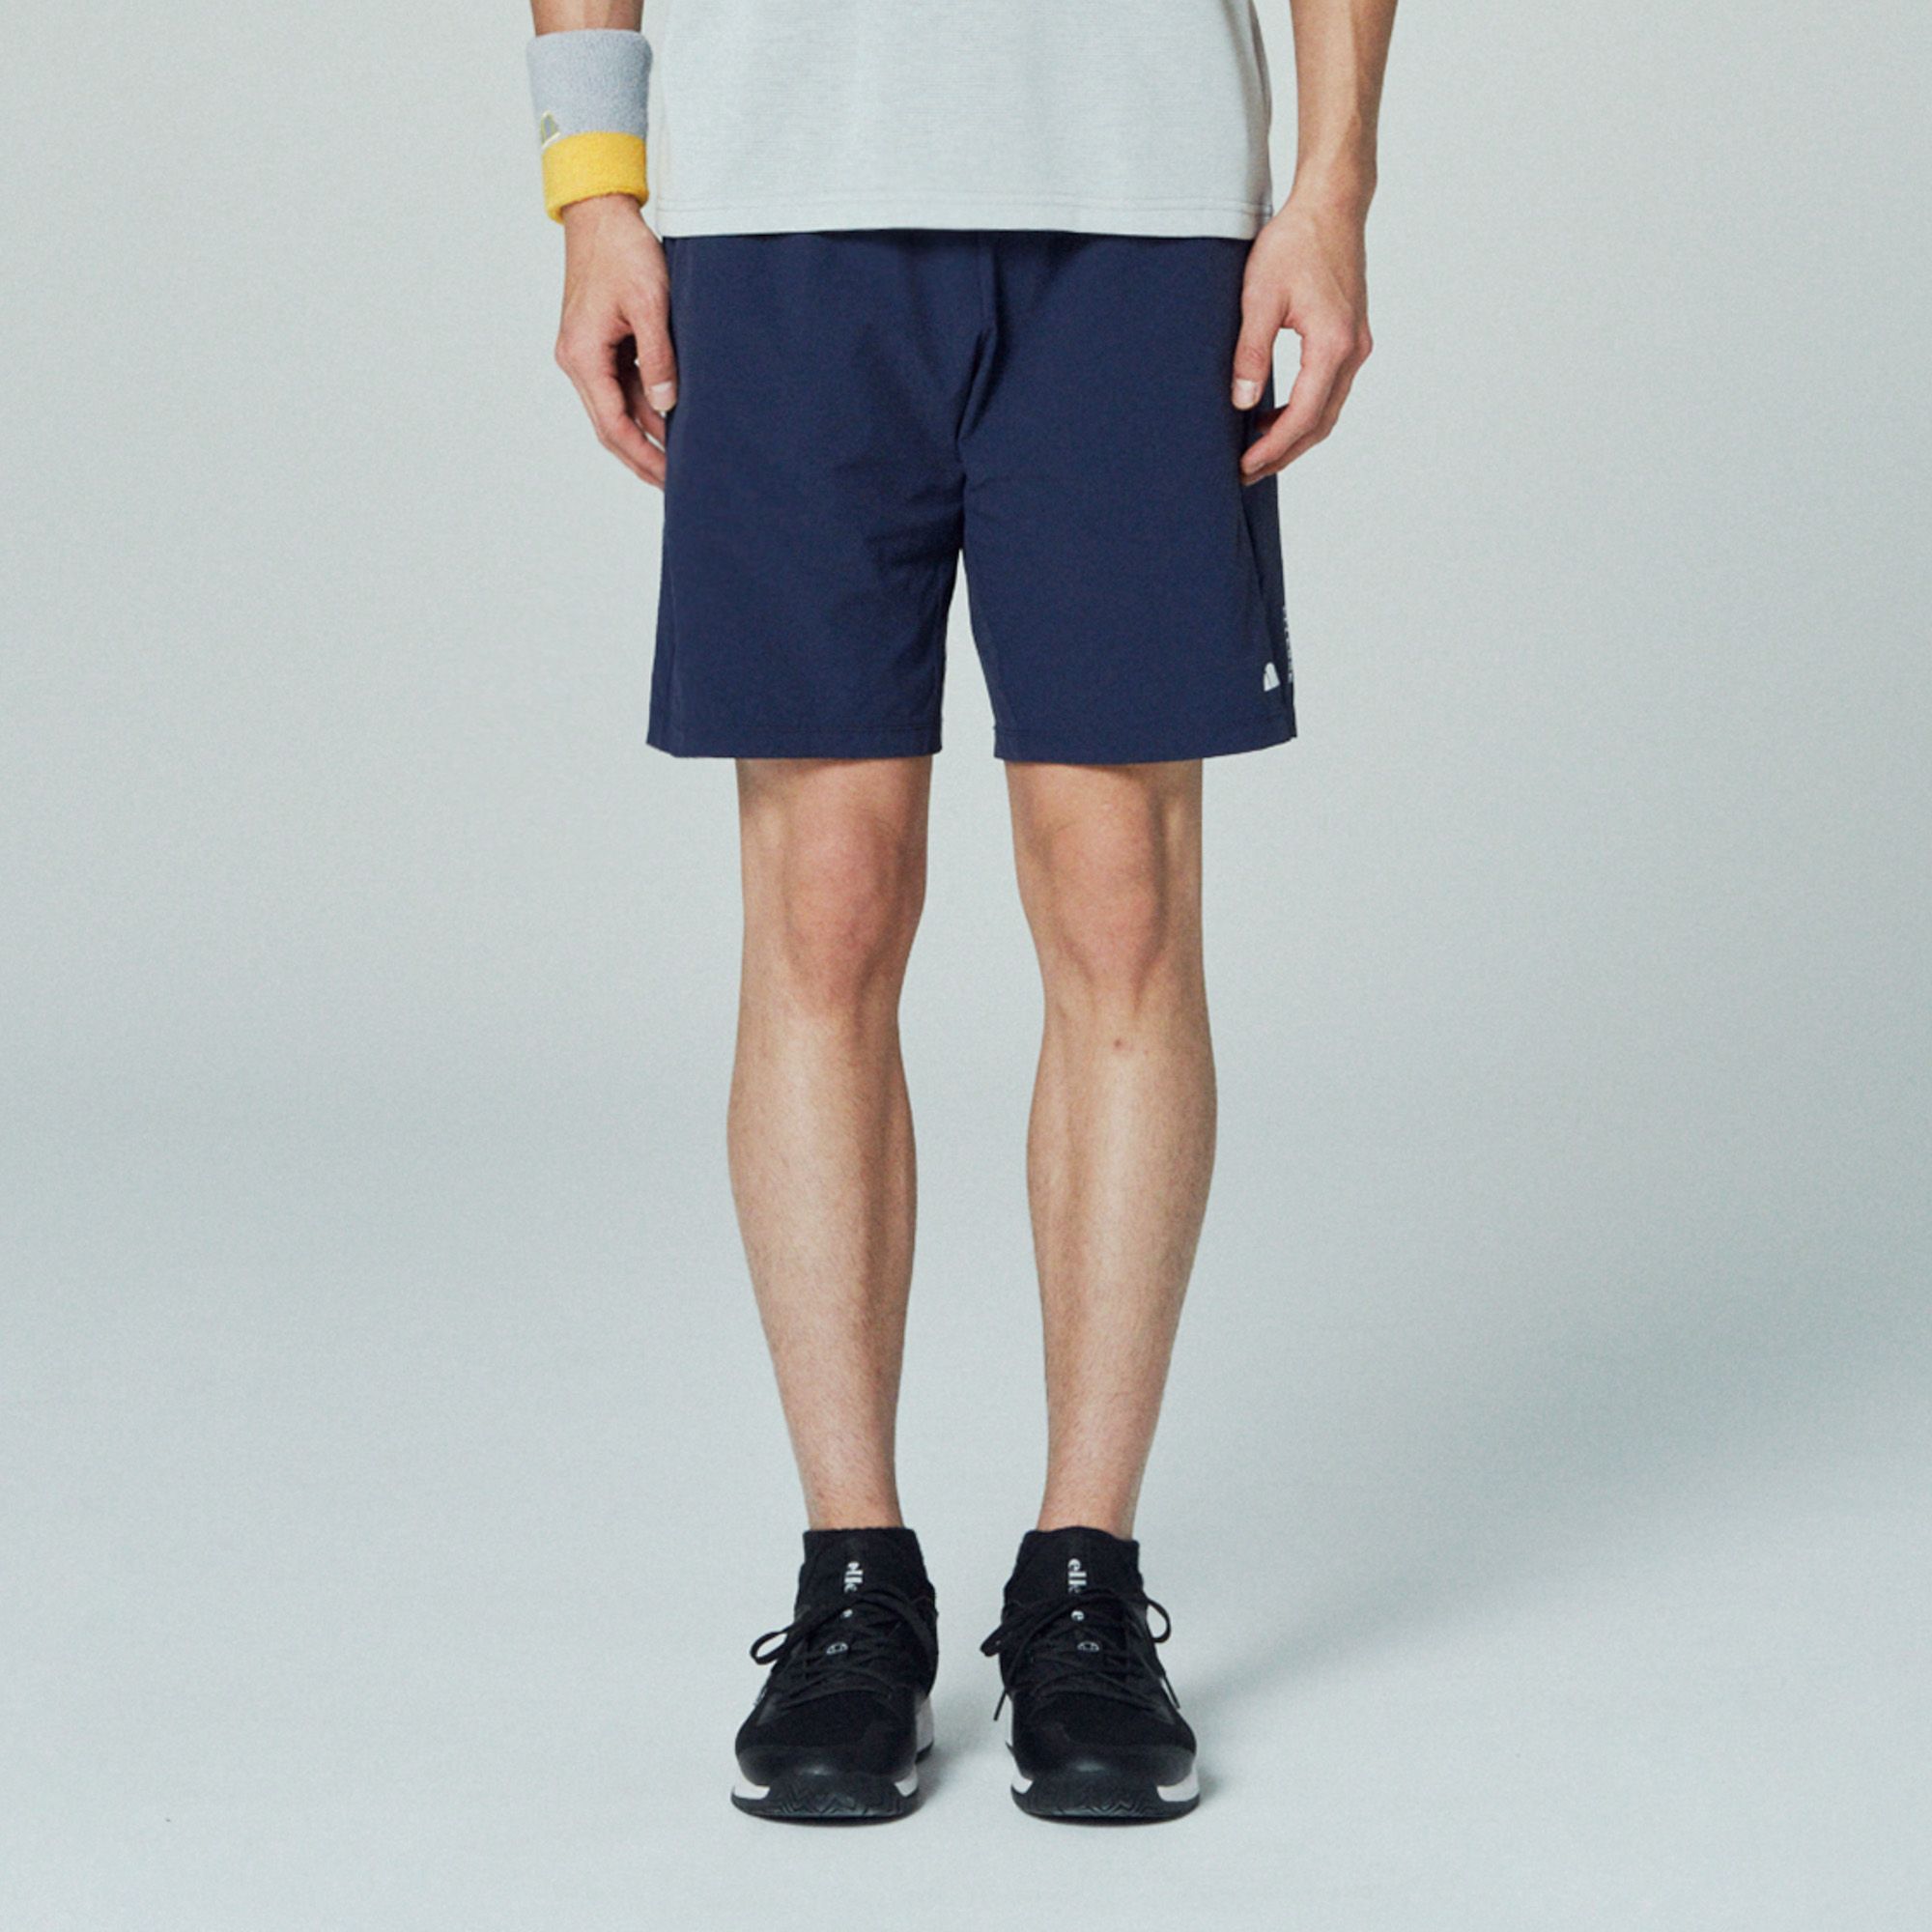 期間限定で特別価格 エレッセ メンズ カジュアルパンツ ボトムス ASTERO Sports shorts blue